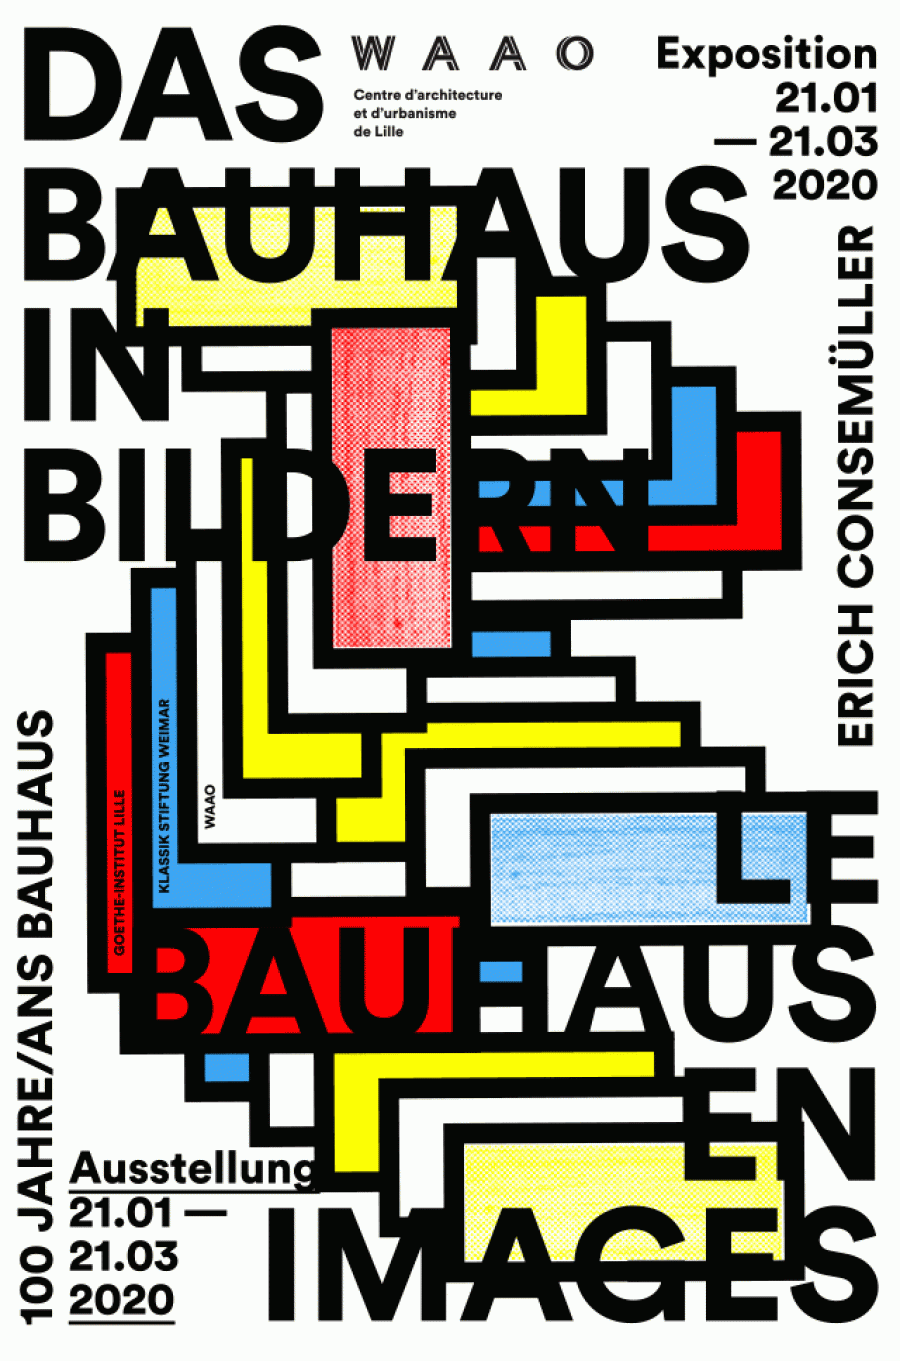 Le Bauhaus en images au WAAO de Lille © WAAO